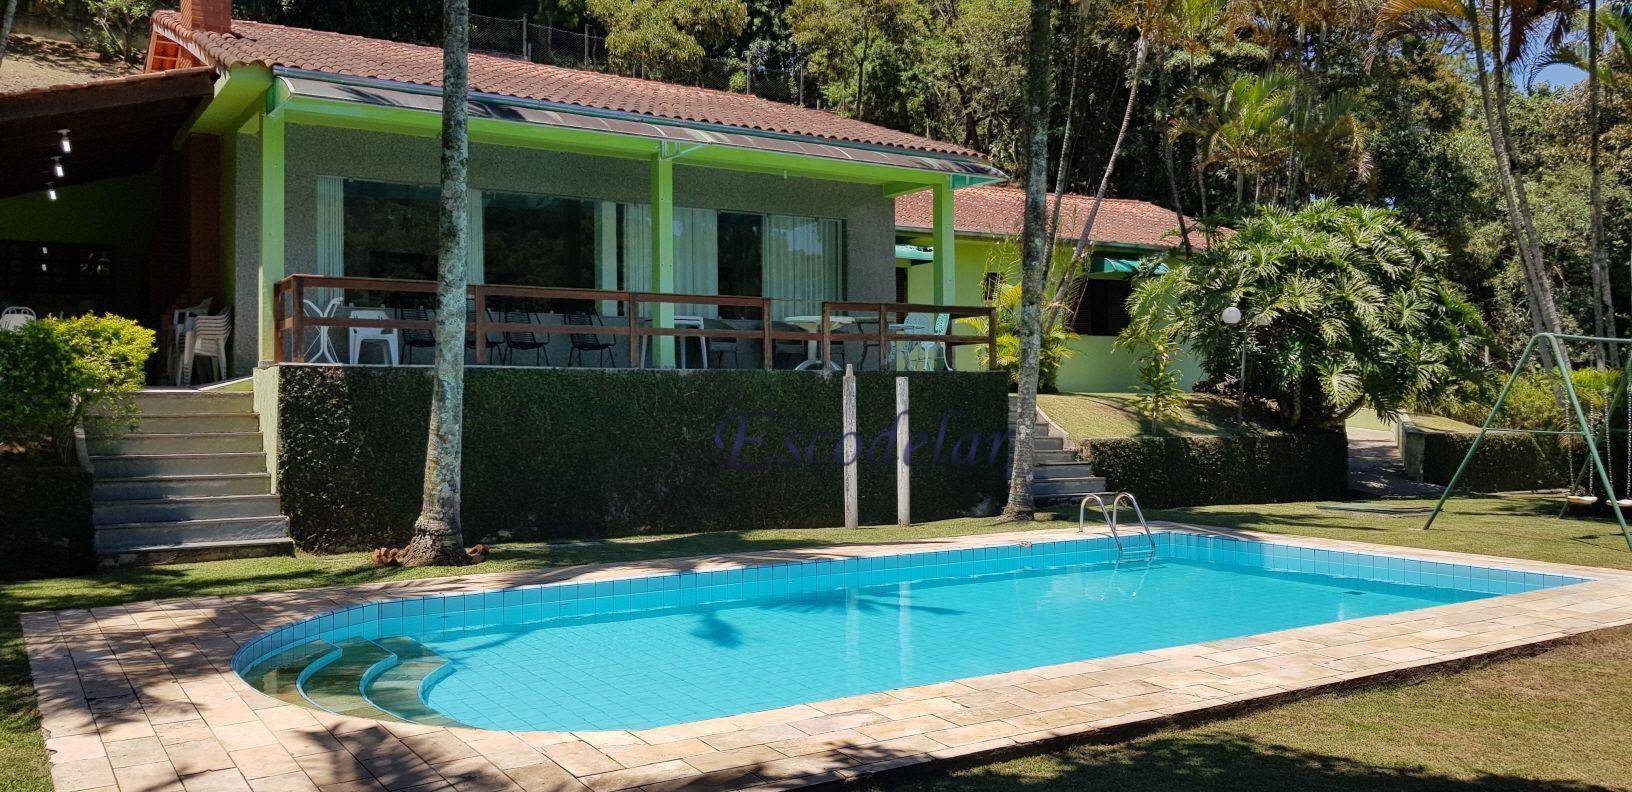 Casa com 4 dormitórios à venda, 324 m² por R$ 1.350.000,00 - Condomínio Alpes da Cantareira - Mairiporã/SP